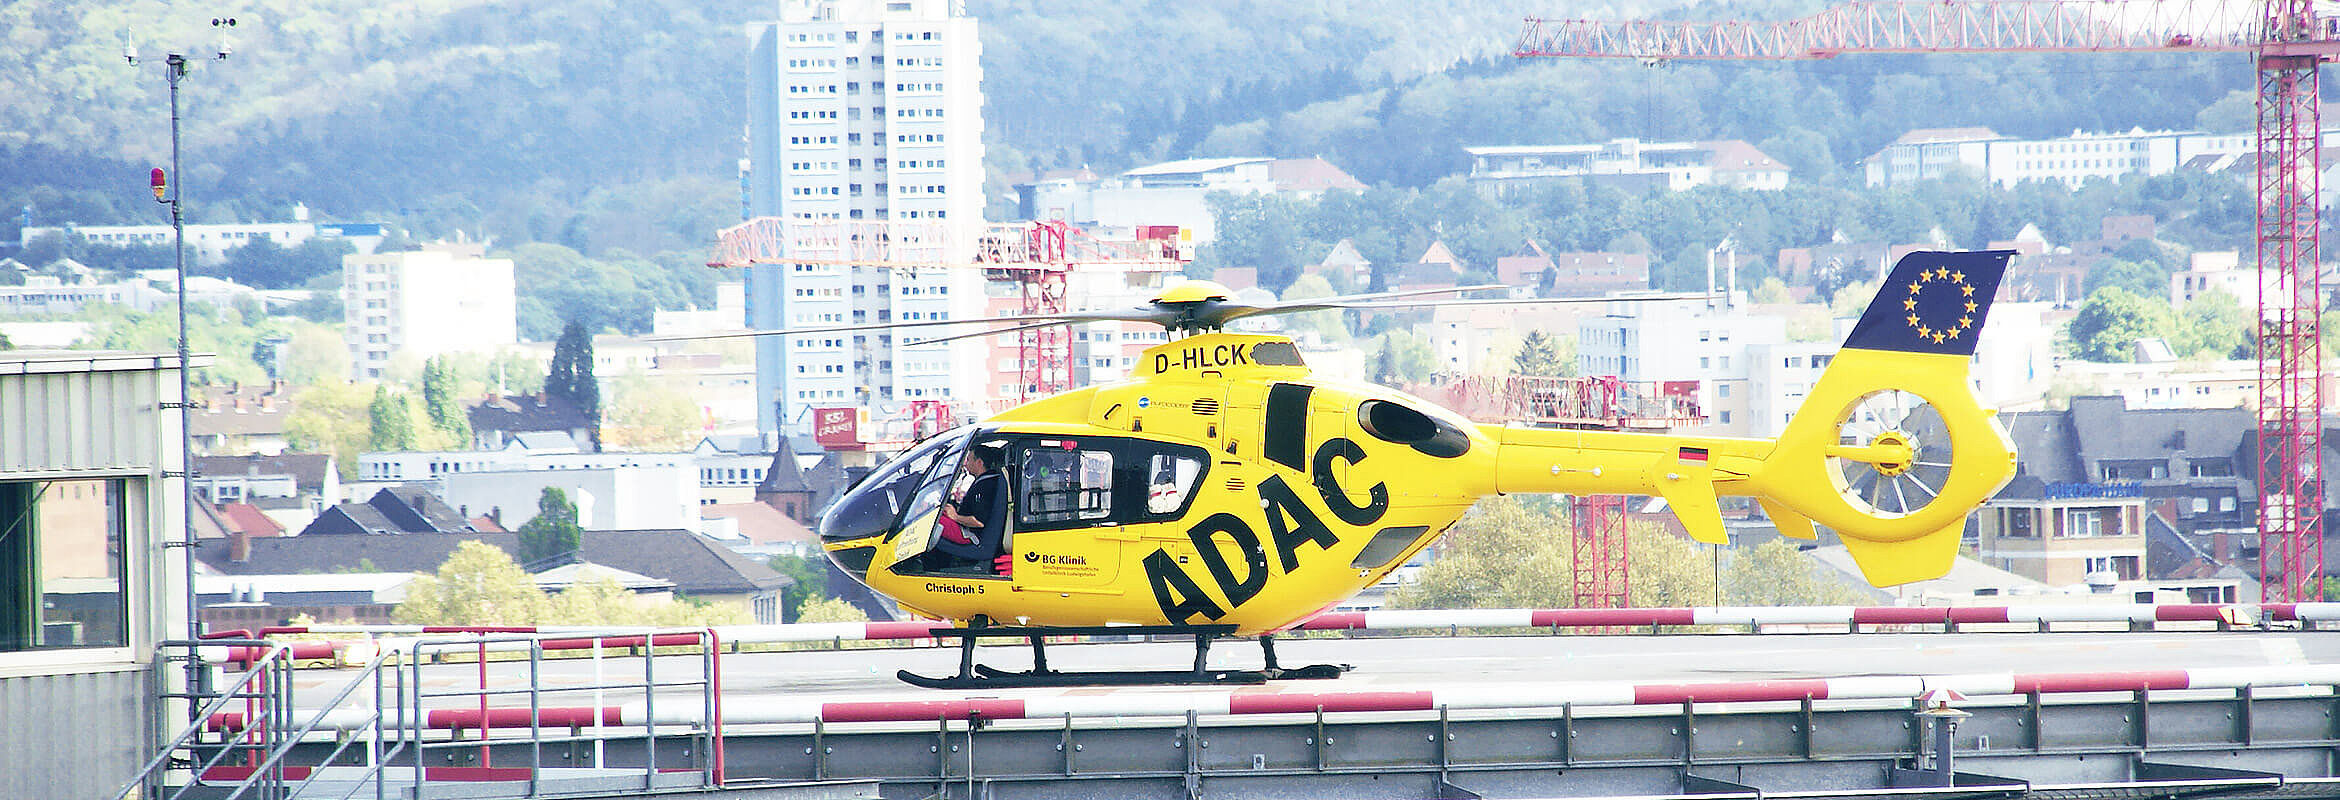 Rettungs- und Intensivhubschrauber "Christoph 66" landet auf dem Hubschrauberlandeplatz